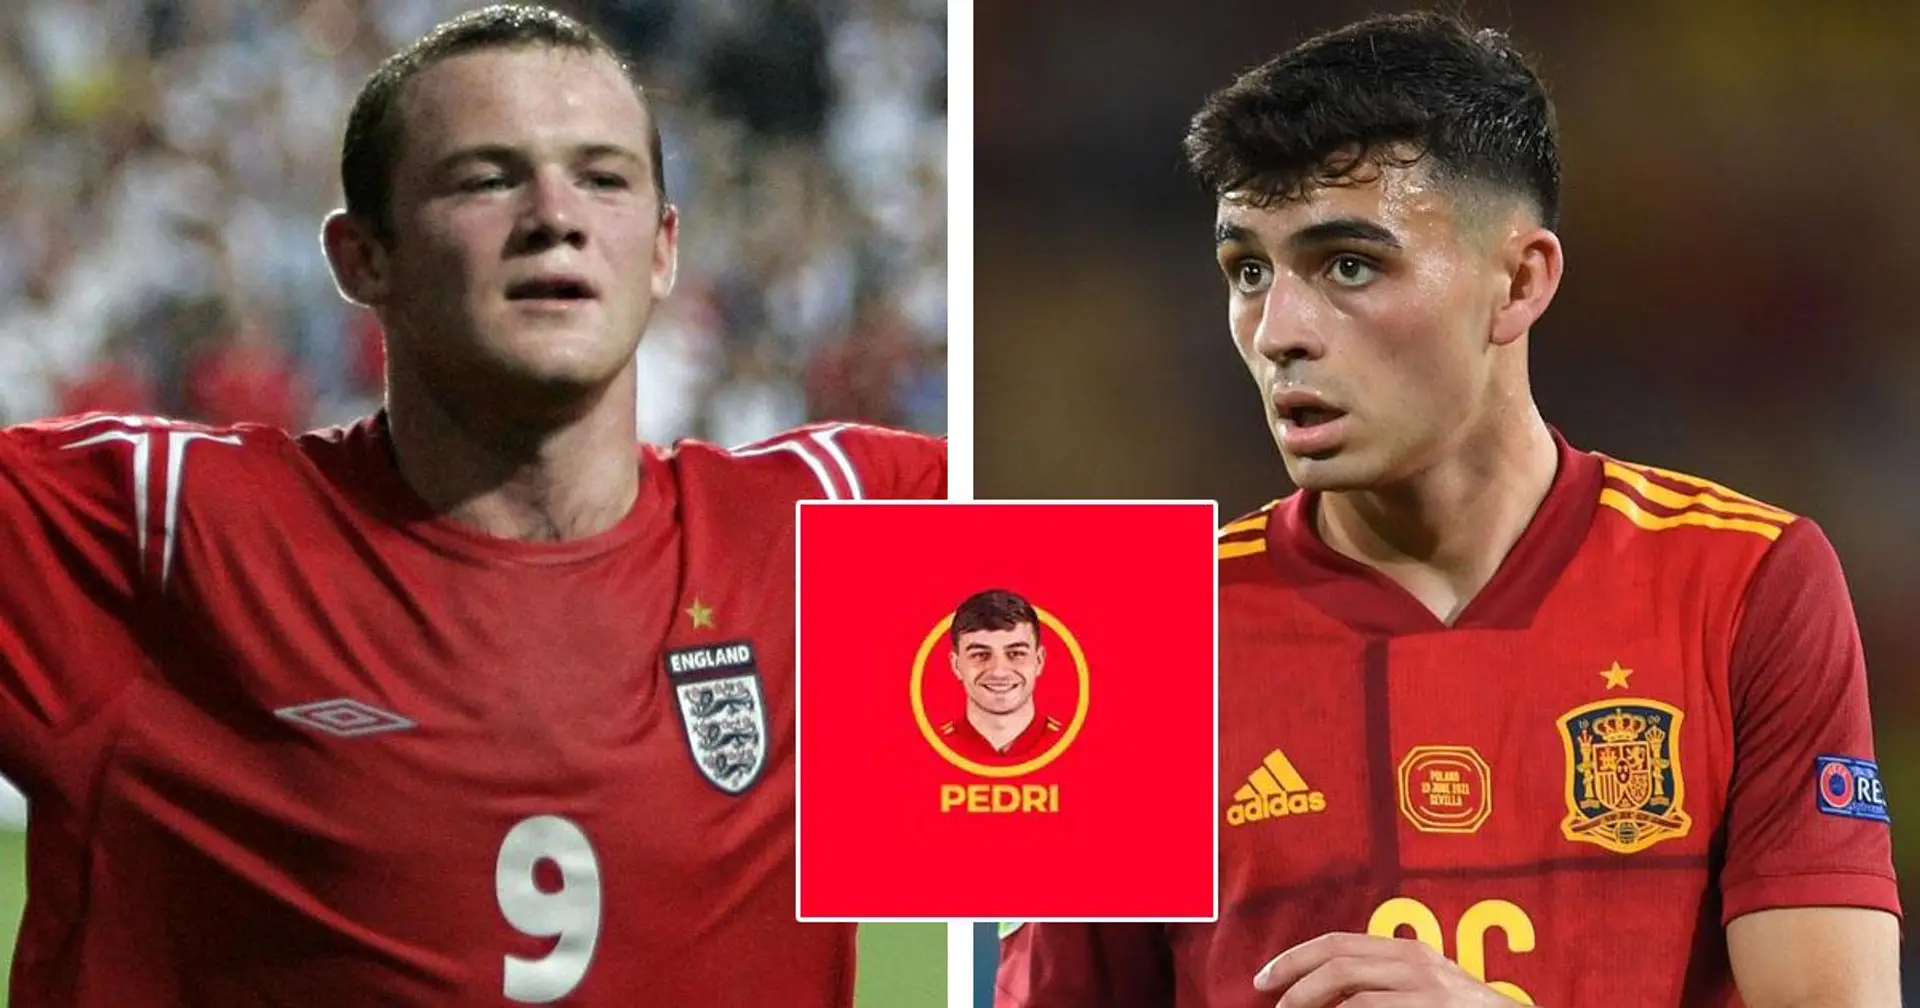 Pedri se convierte en el futbolista más joven en jugar una eliminatoria de una Eurocopa